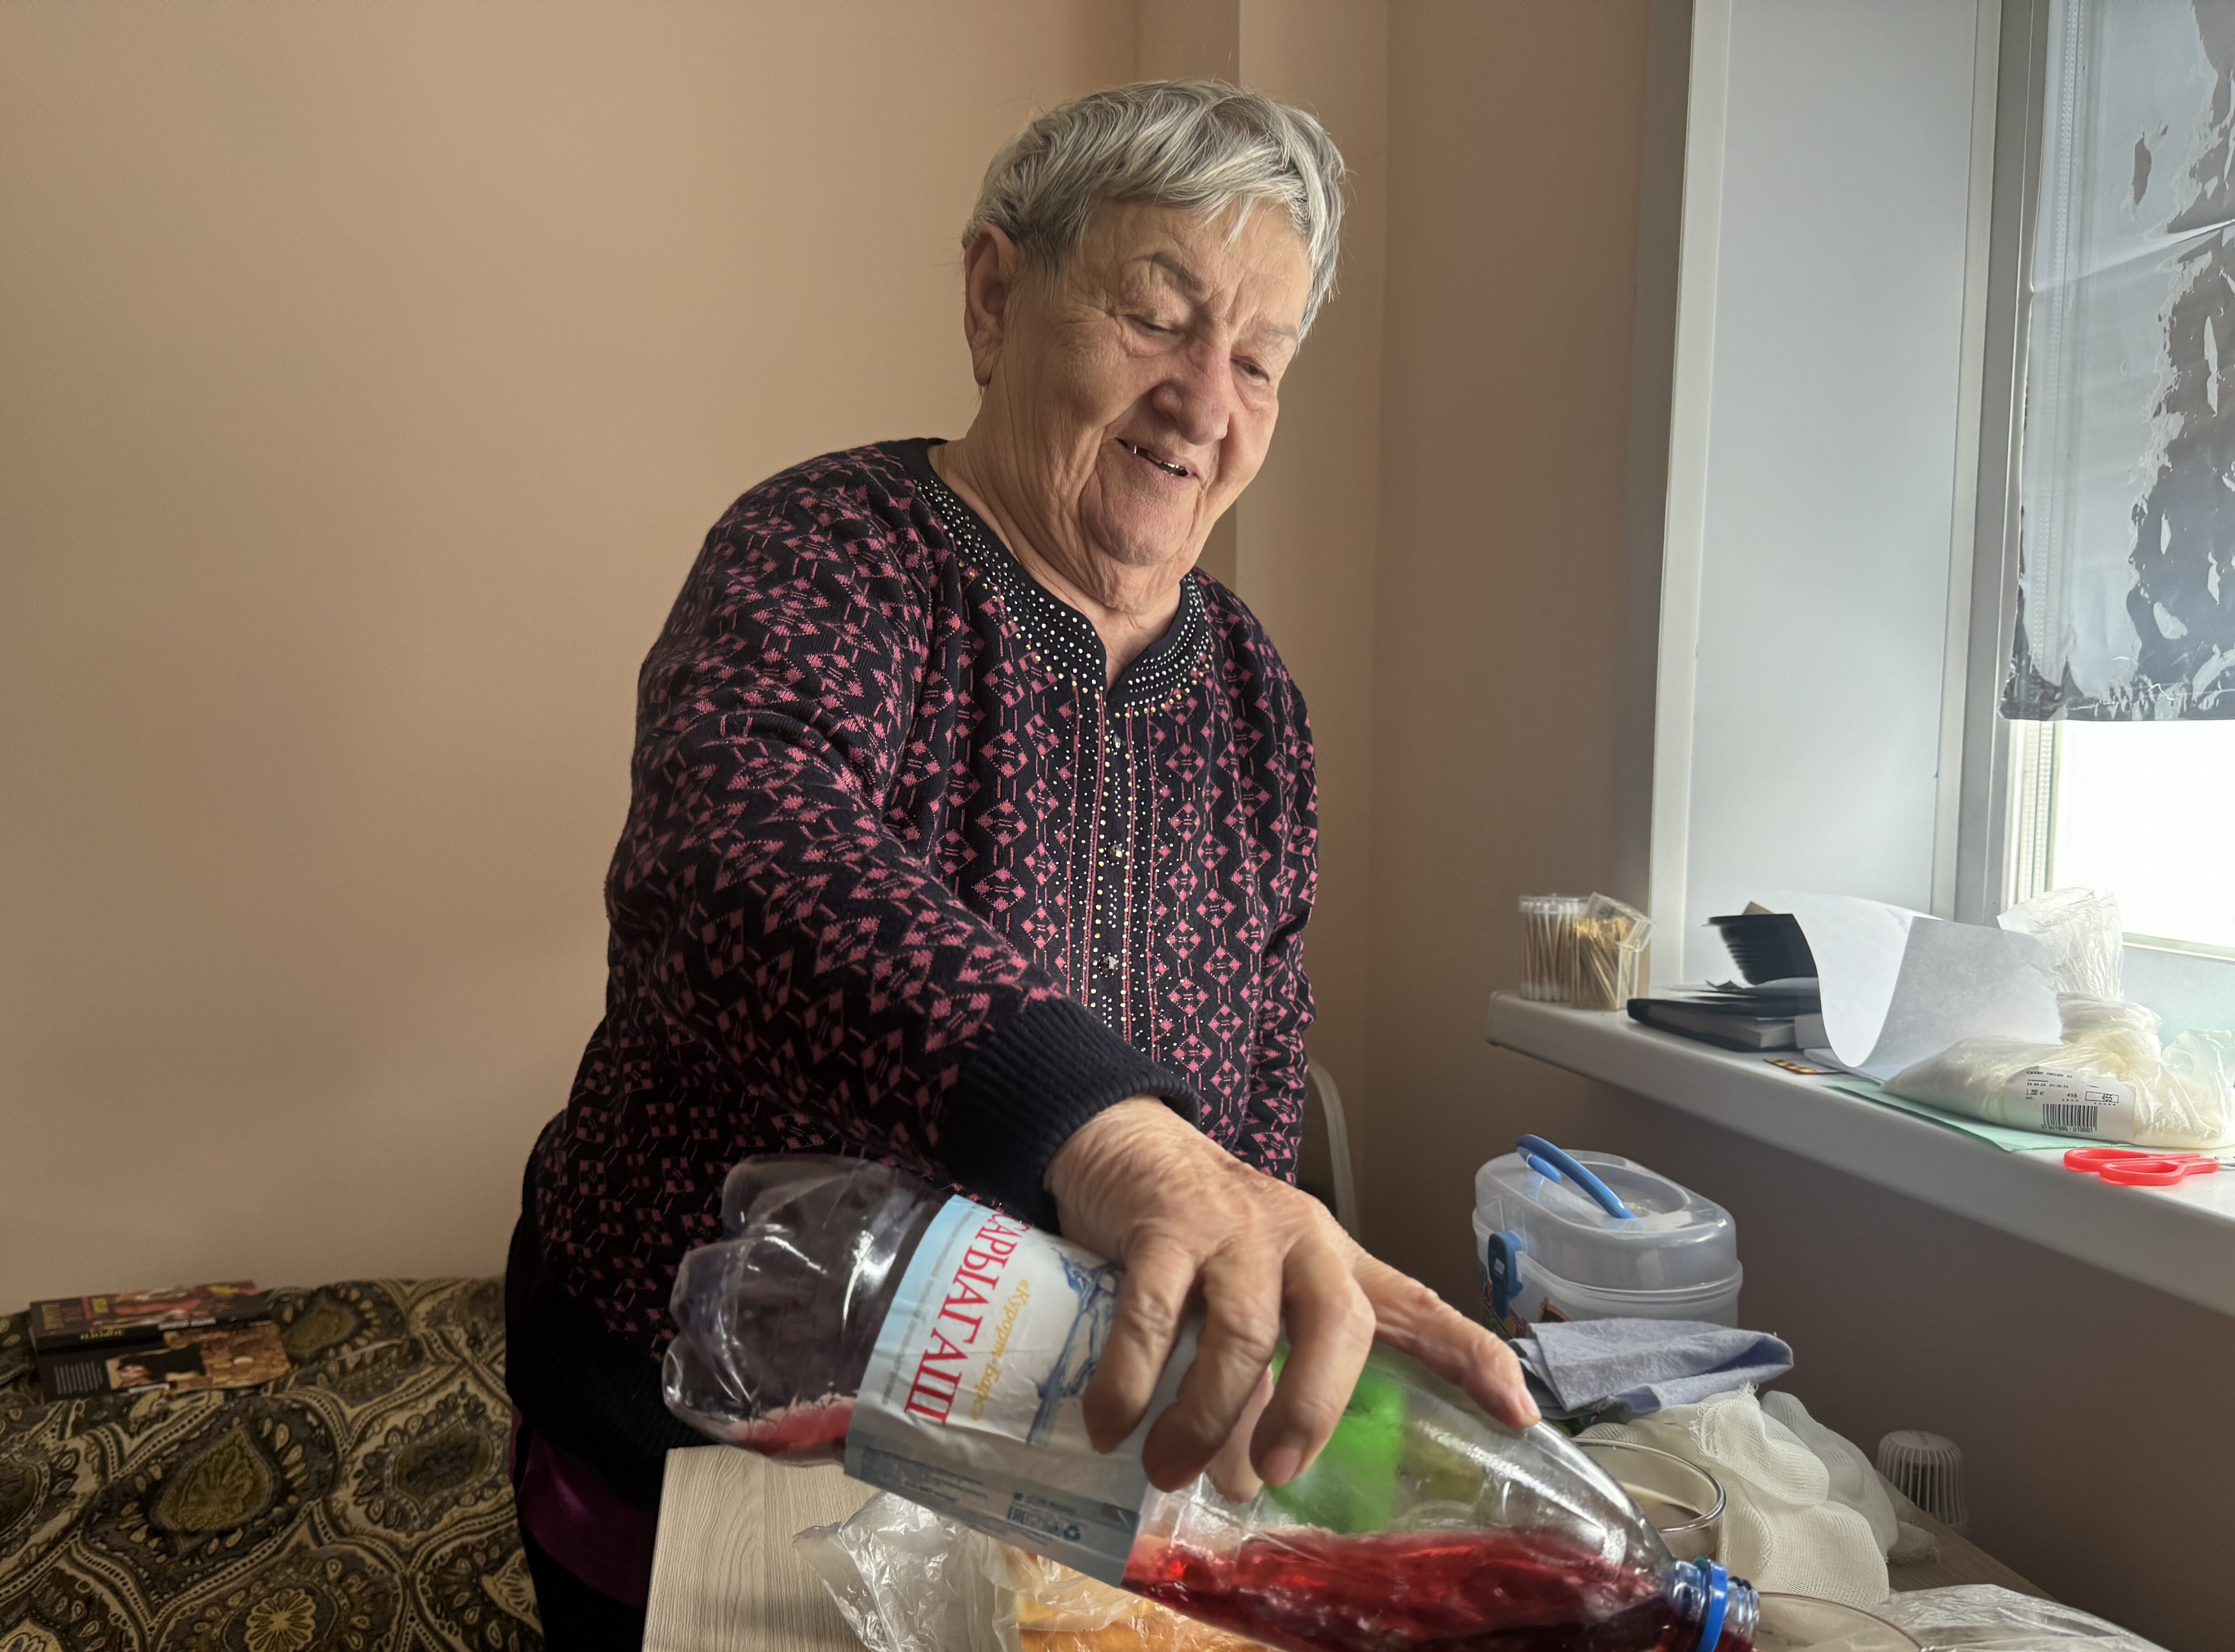 Вместо аварийного дома семья пенсионерки Галины Соловьевой получит 3-комн. квартиру